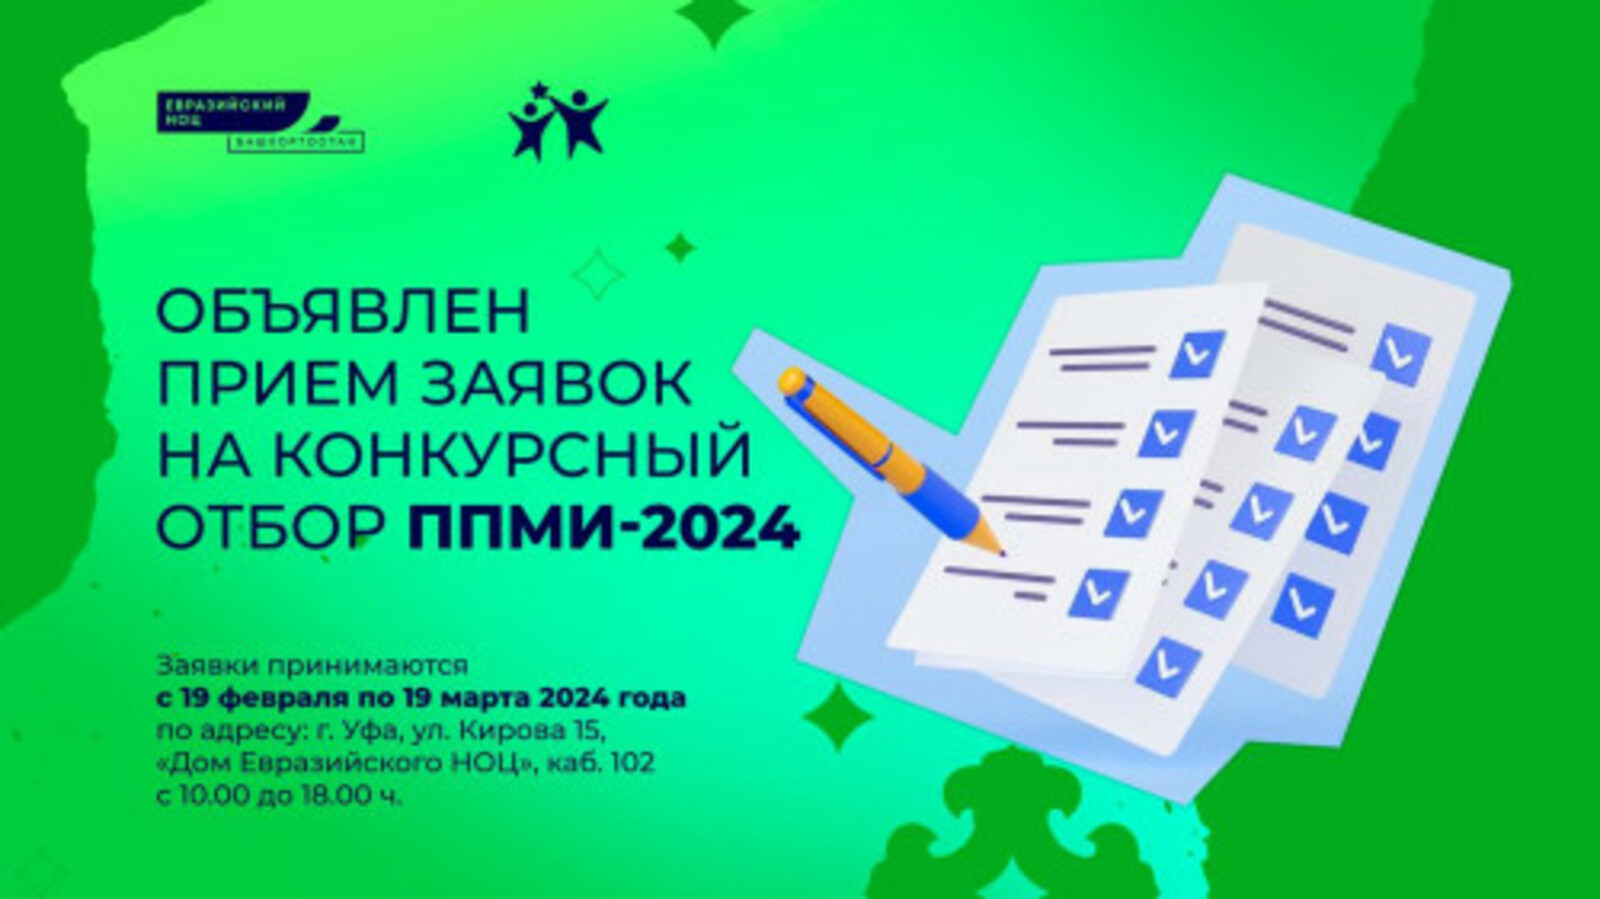 С 19 февраля по 19 марта в Башкортостане проходит конкурсный отбор Программы поддержки местных инициатив – 2024